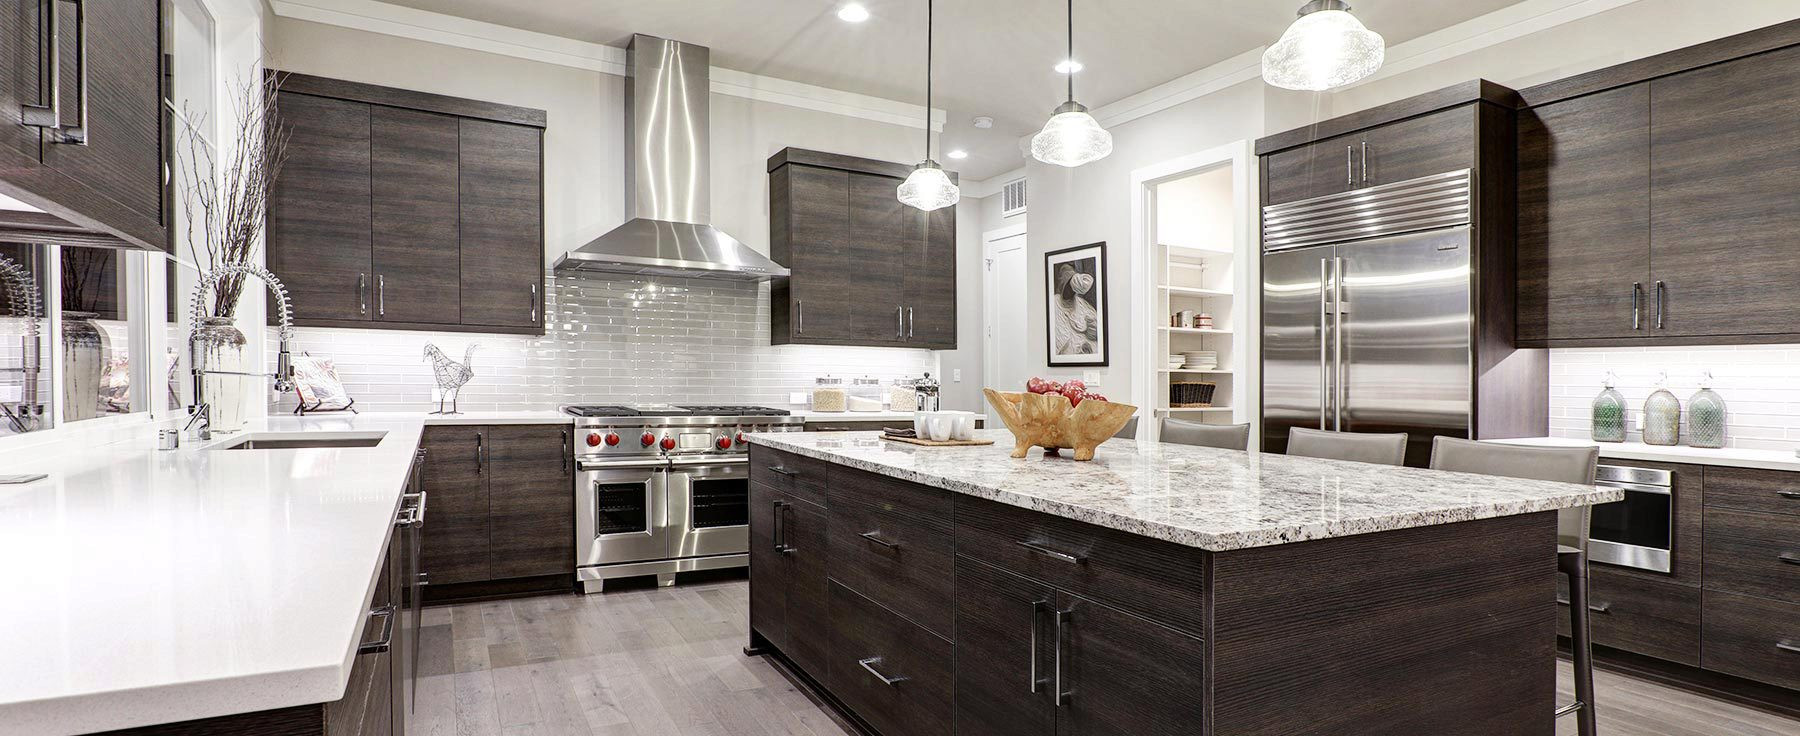 Kitchen Remodel Cost Estimator
 Kitchen Remodels Under 5000 – Wow Blog